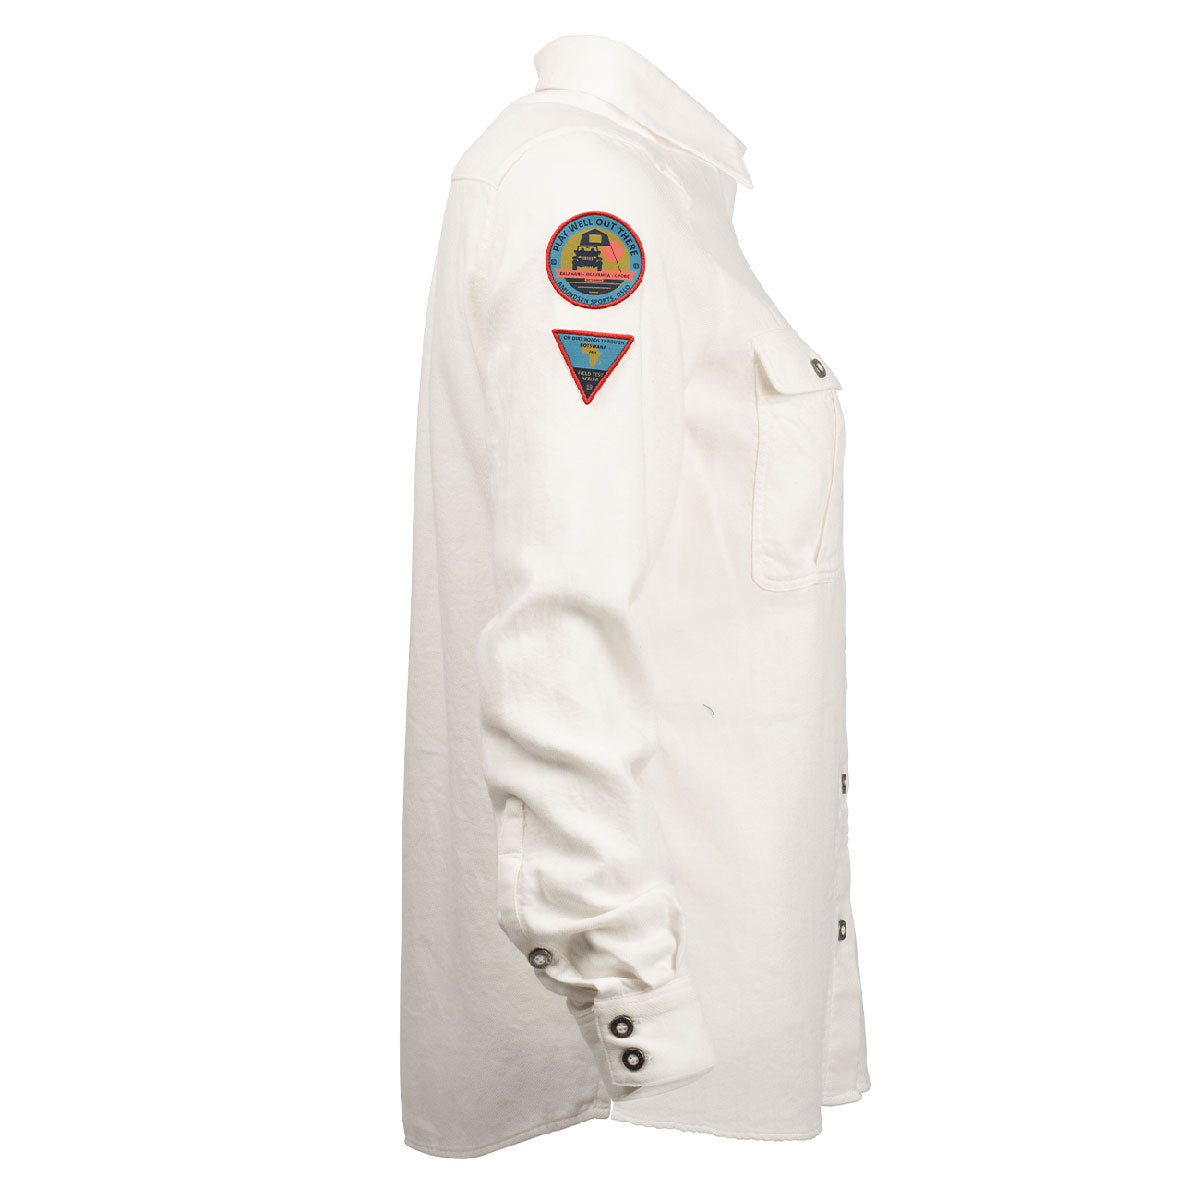 Amundsen Sports - Women's Safari Linen Shirt, Garment Dyed - Natural